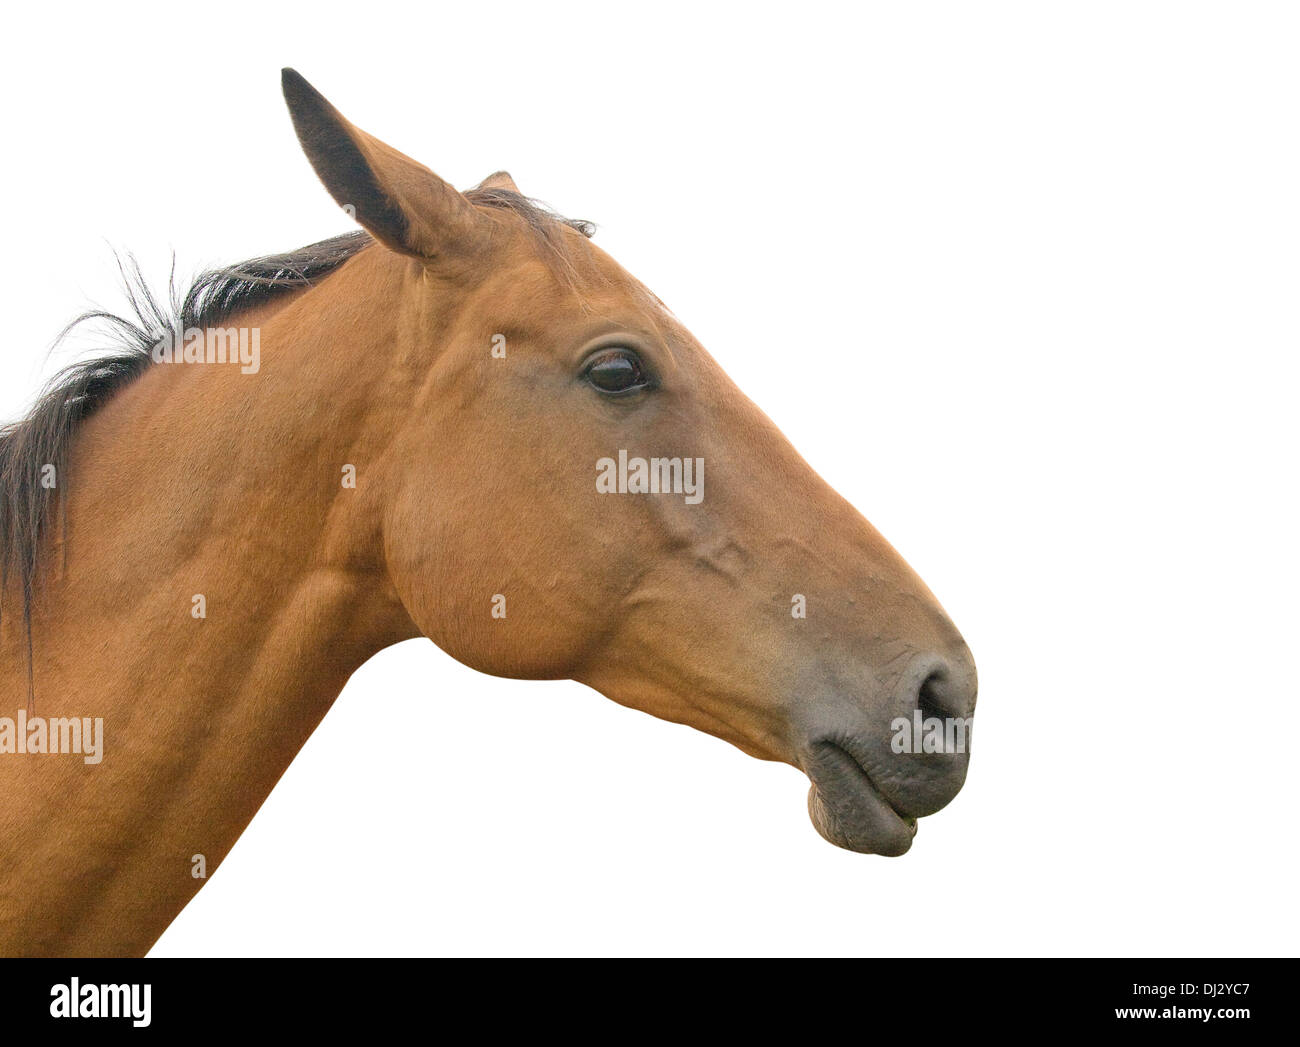 Profil von einem Pferd Kopf und Hals, isoliert auf weißem Hintergrund Stockfoto